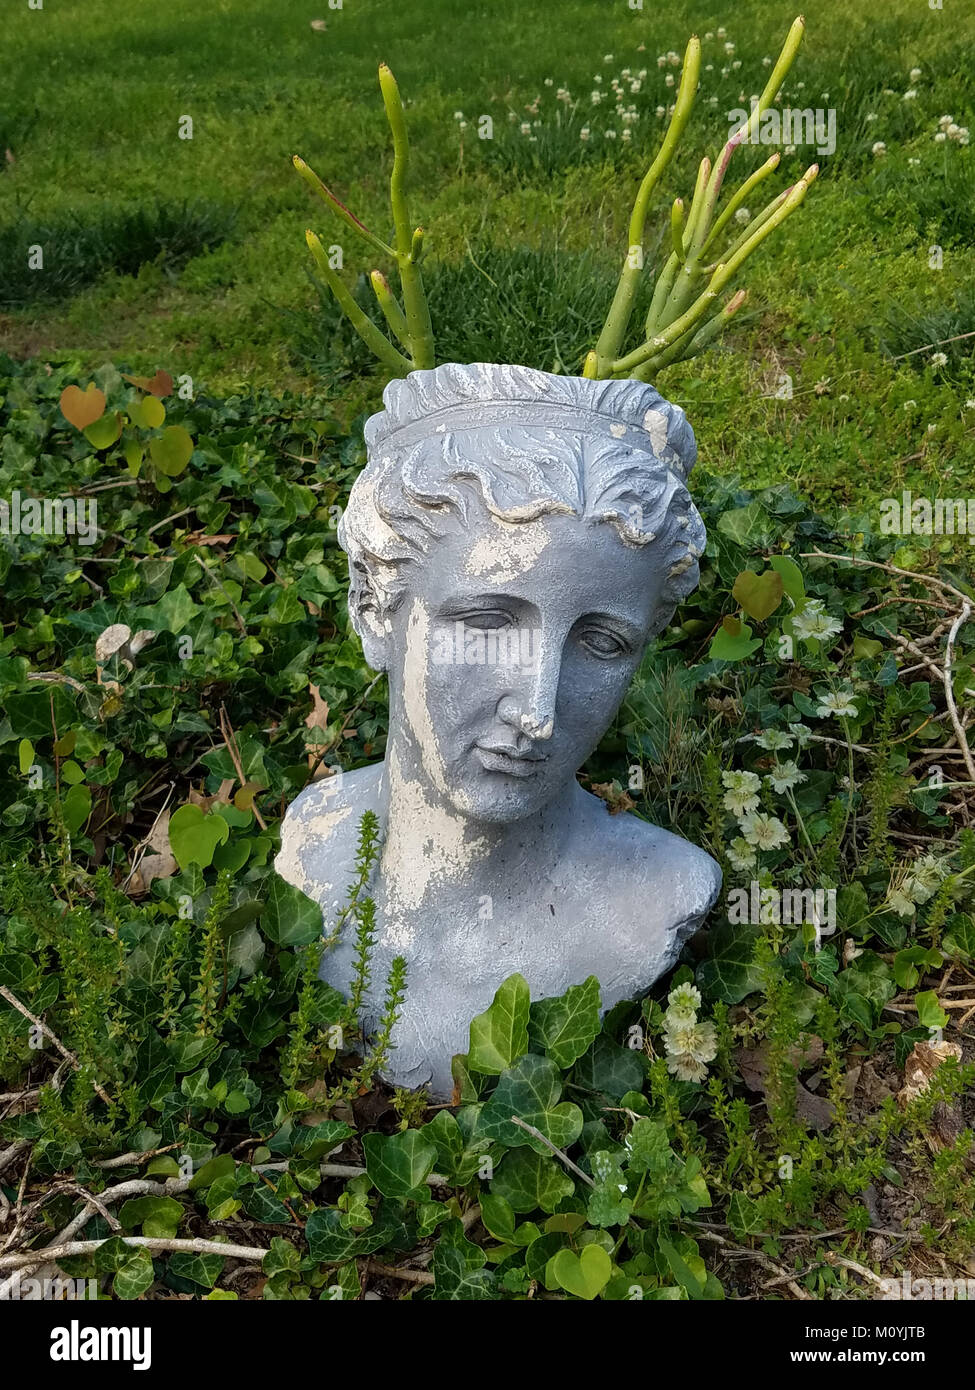 Testa romana piantatrice con cacti growning fuori della sua testa in un letto di edera e di erbe in Foto Stock